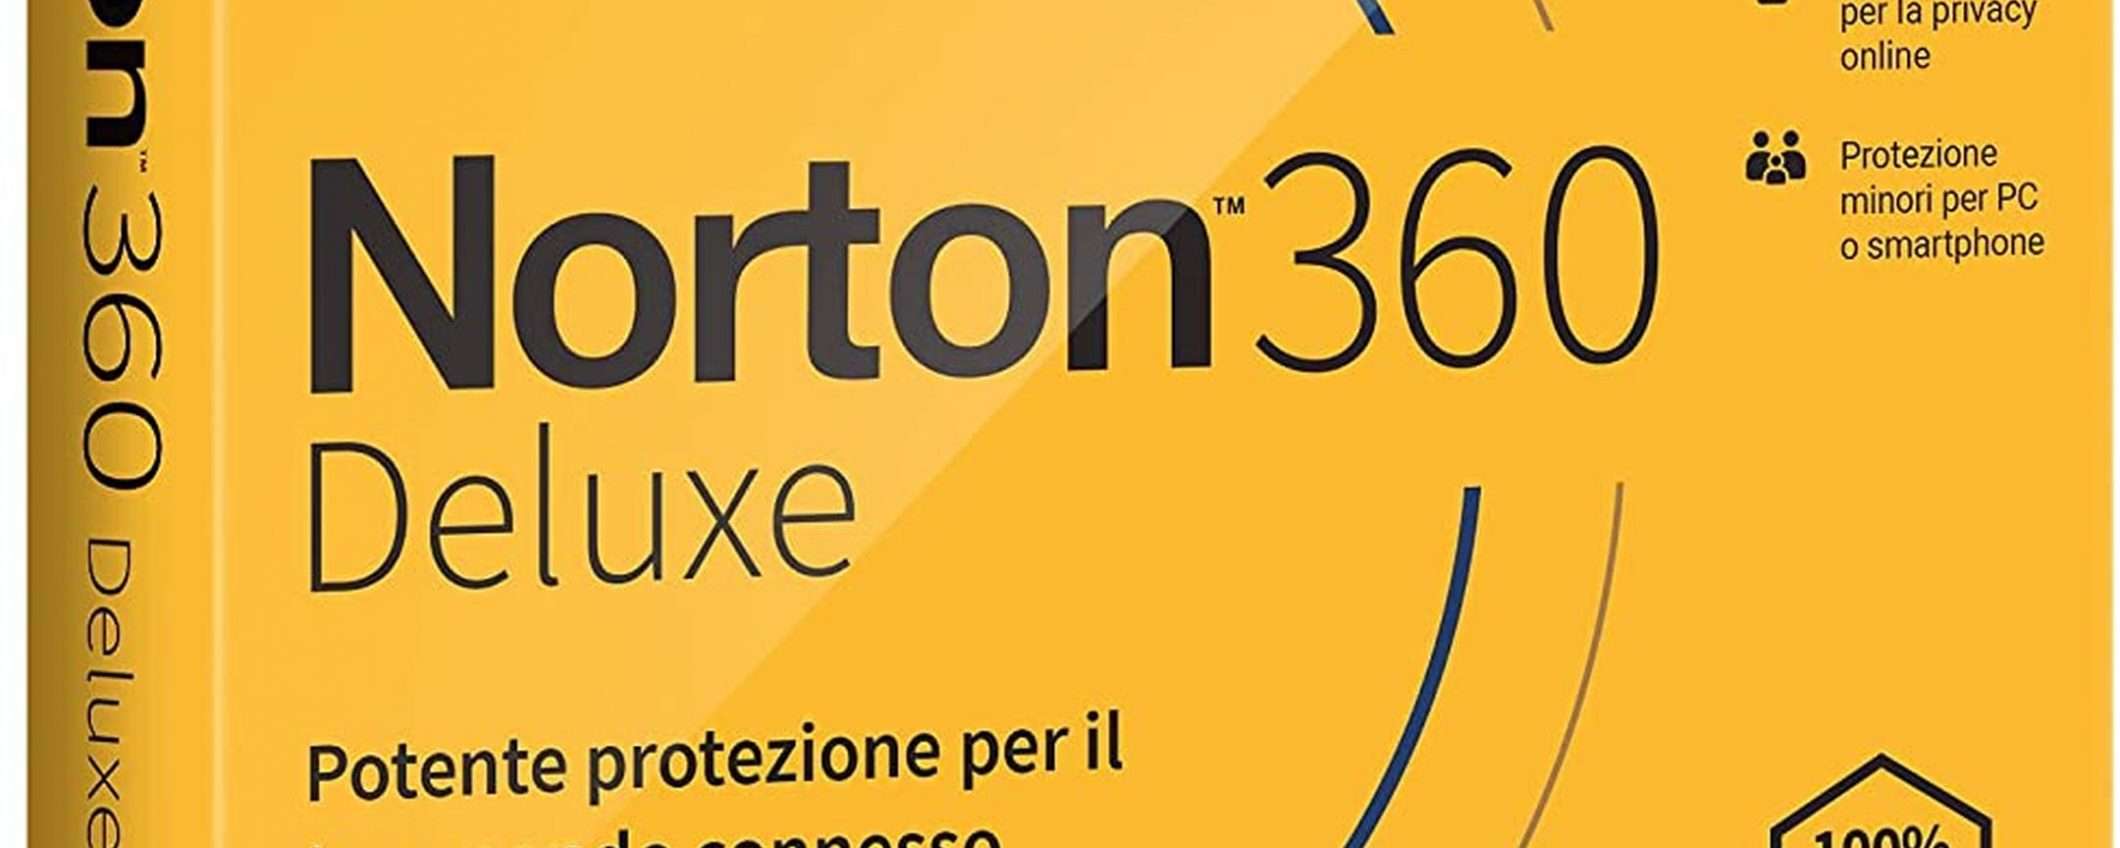 Norton 360 Deluxe: sconto 63% per un anno